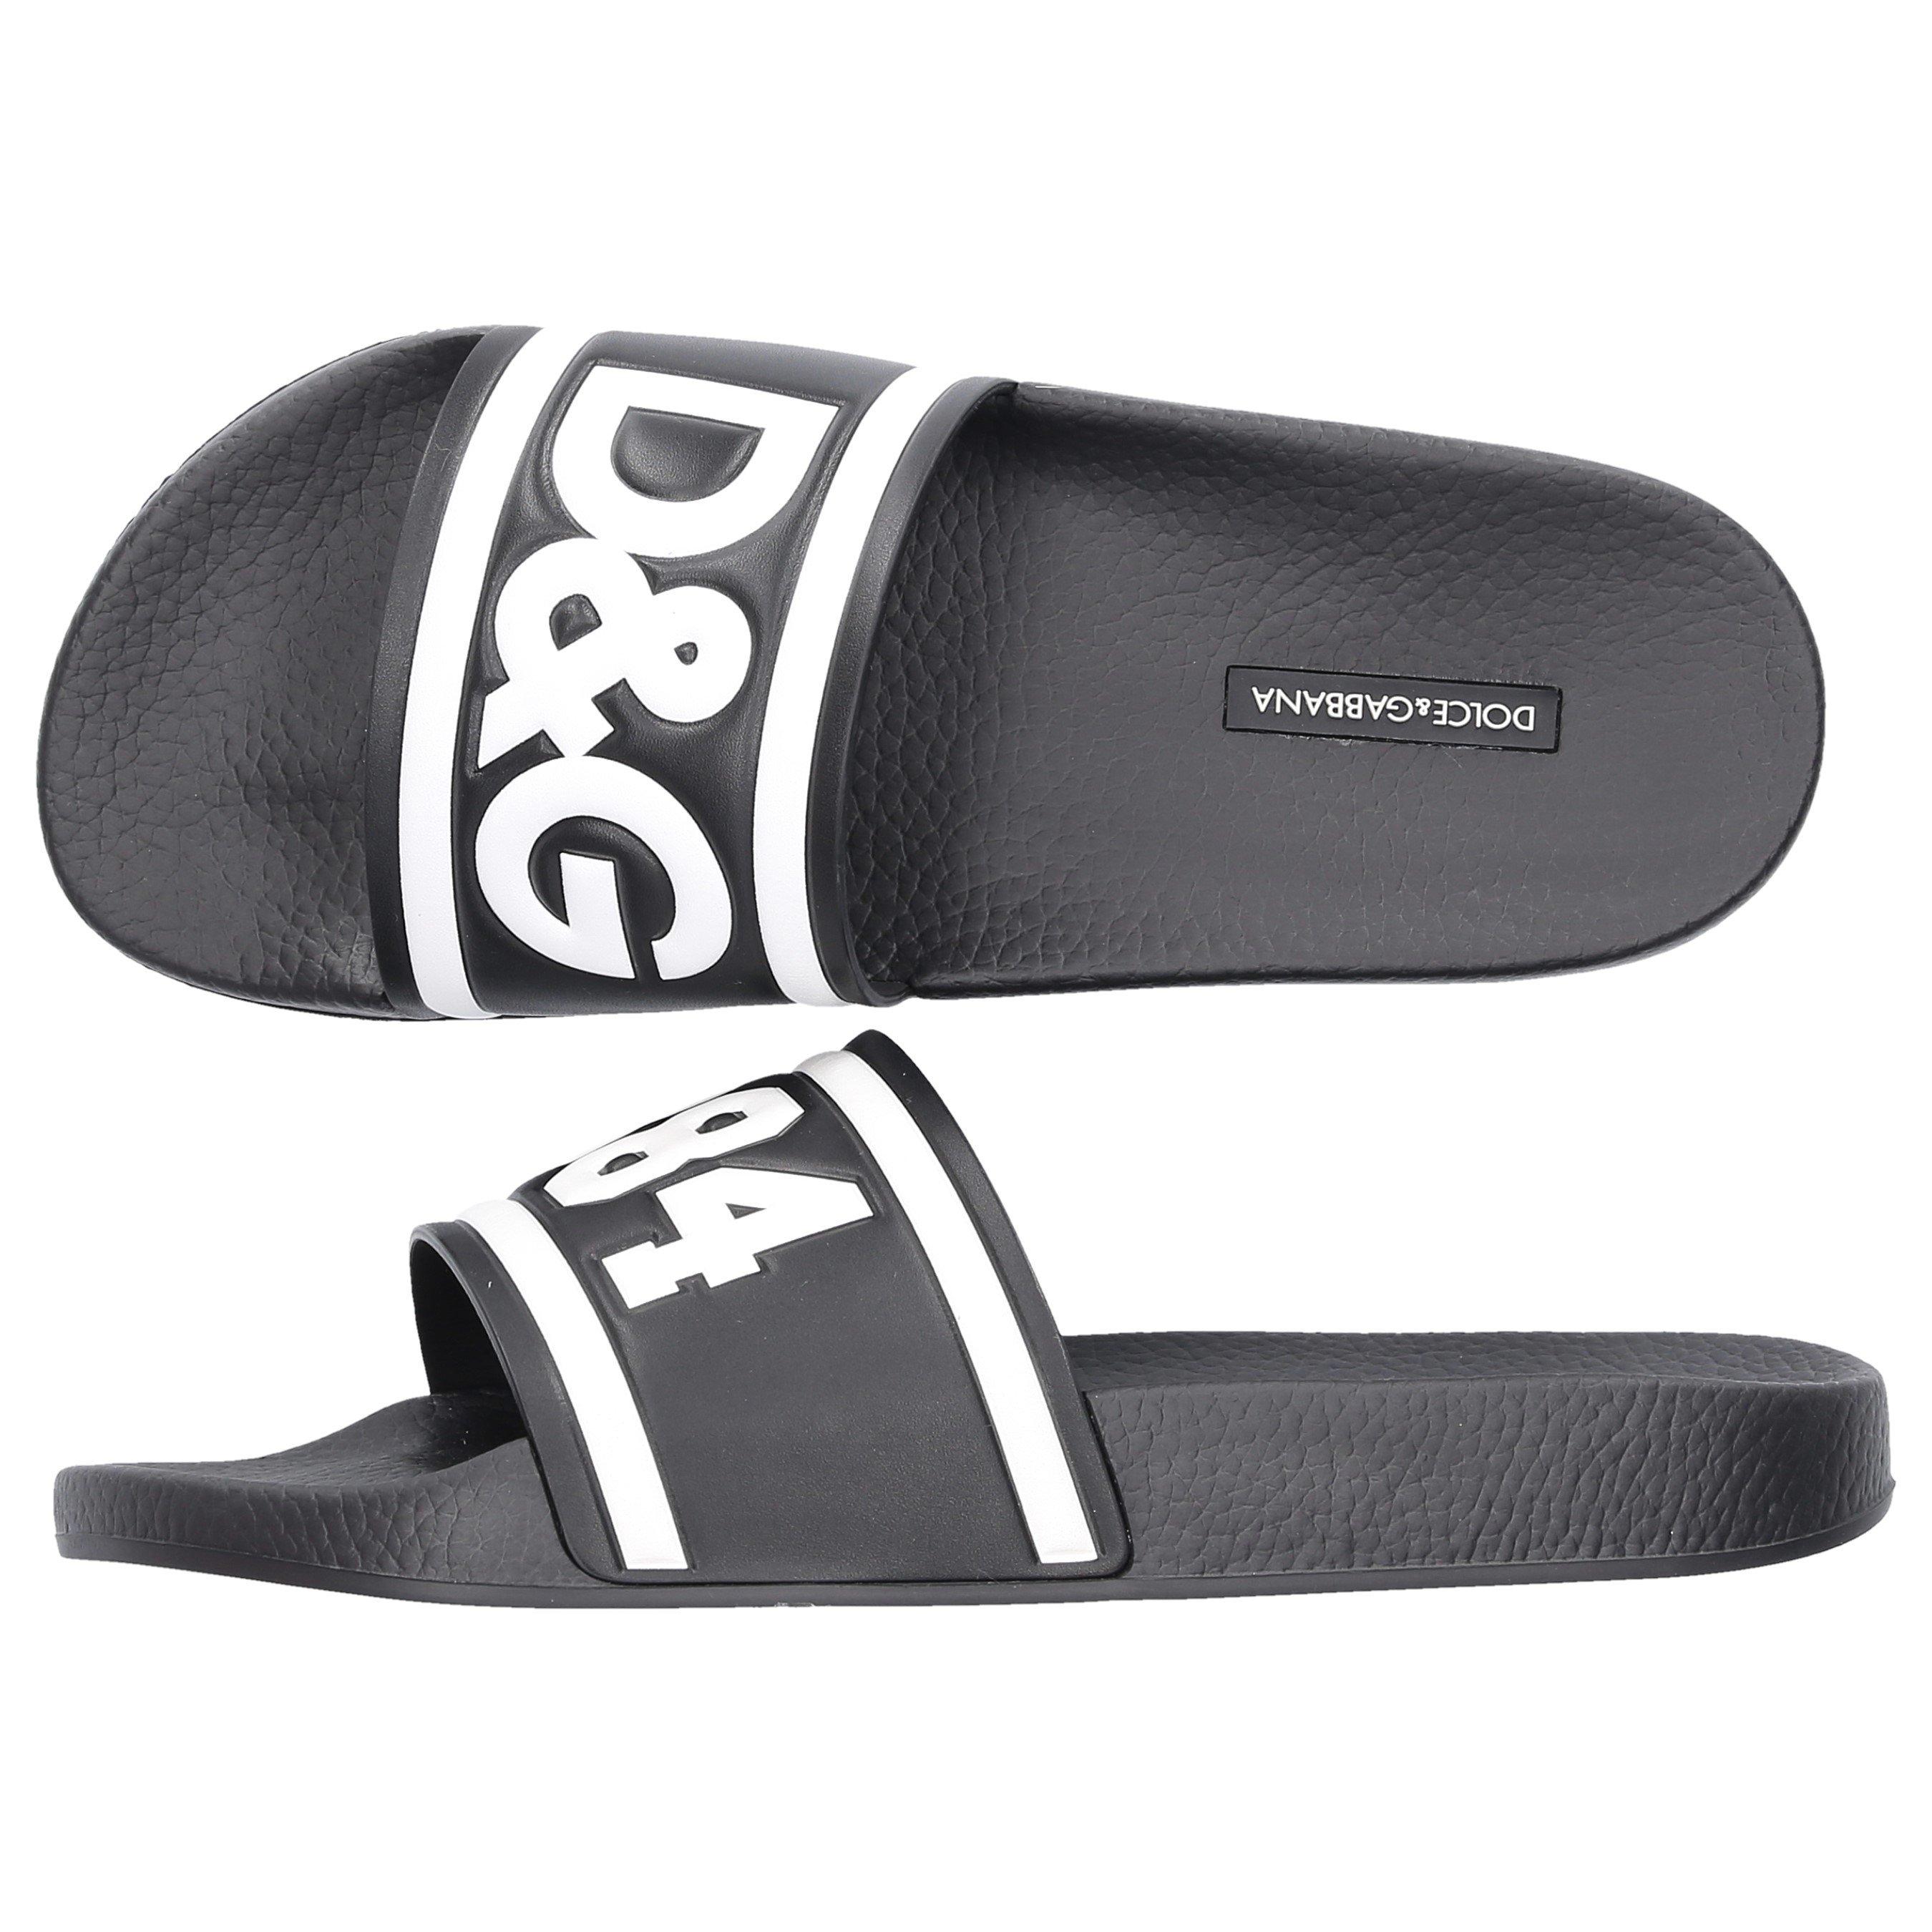 Dolce & Gabbana Rubber Logo Embossed Slides in Black for Men slides and flip flops Leather sandals Mens Shoes Sandals 